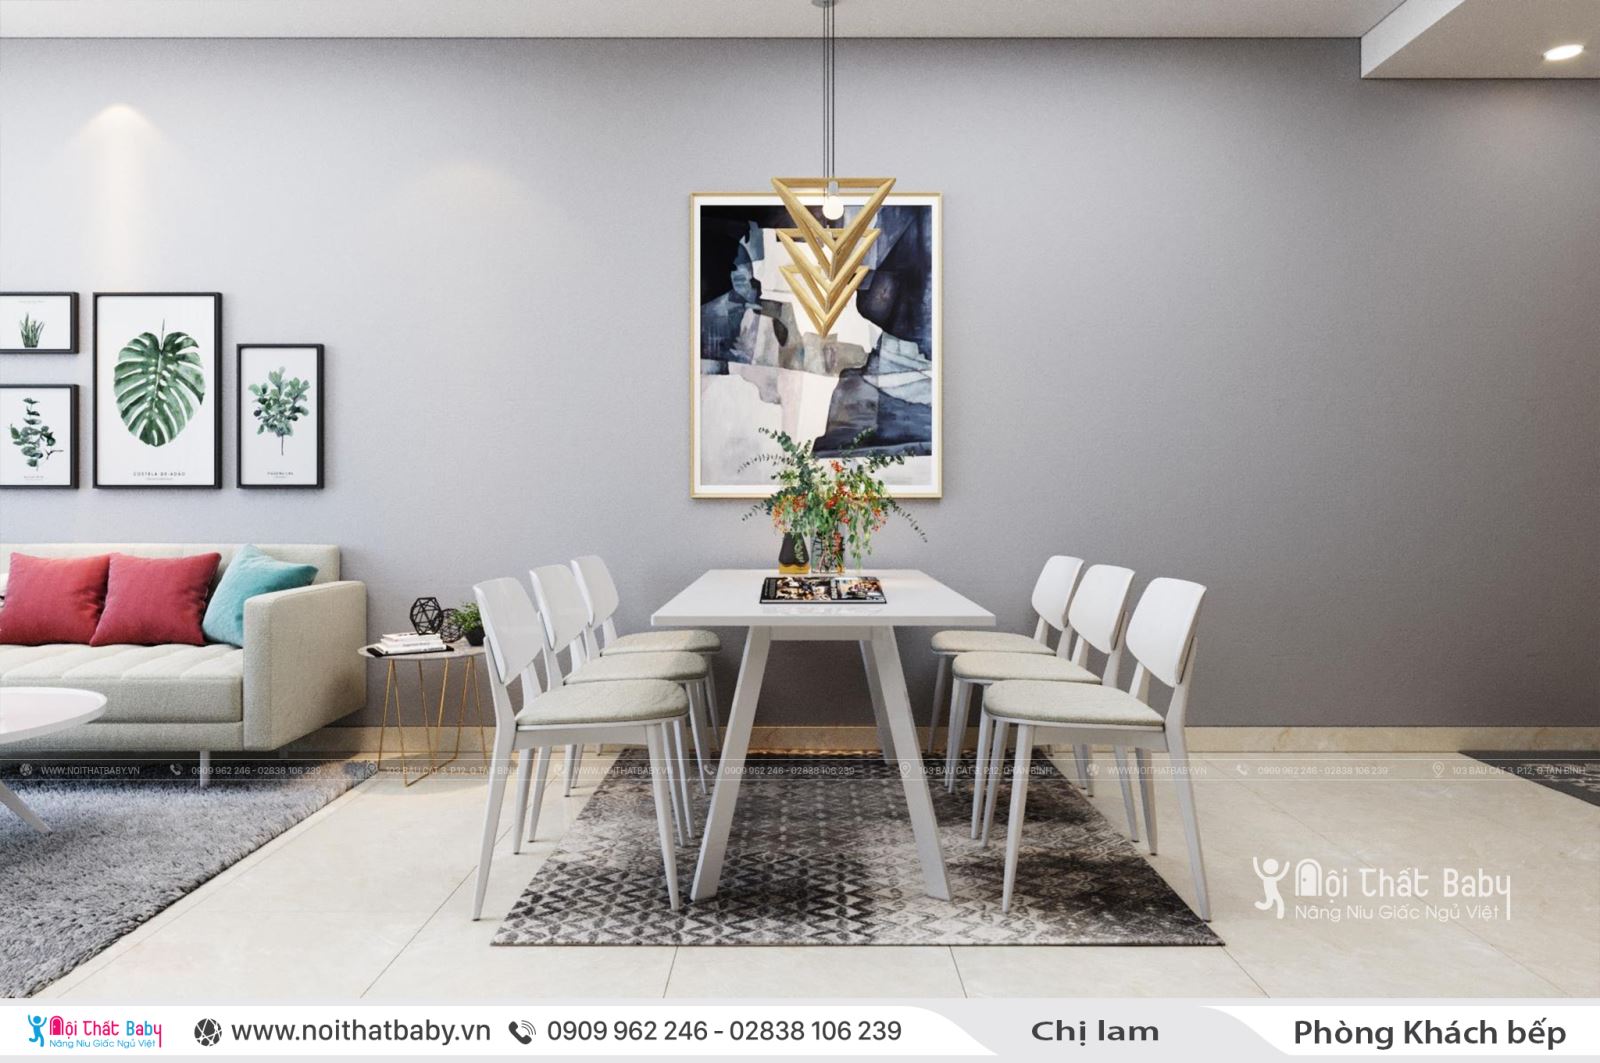 Mẫu thiết kế nội thất căn hộ chung cư hiện đại tại Emerald Celadon City 74m2